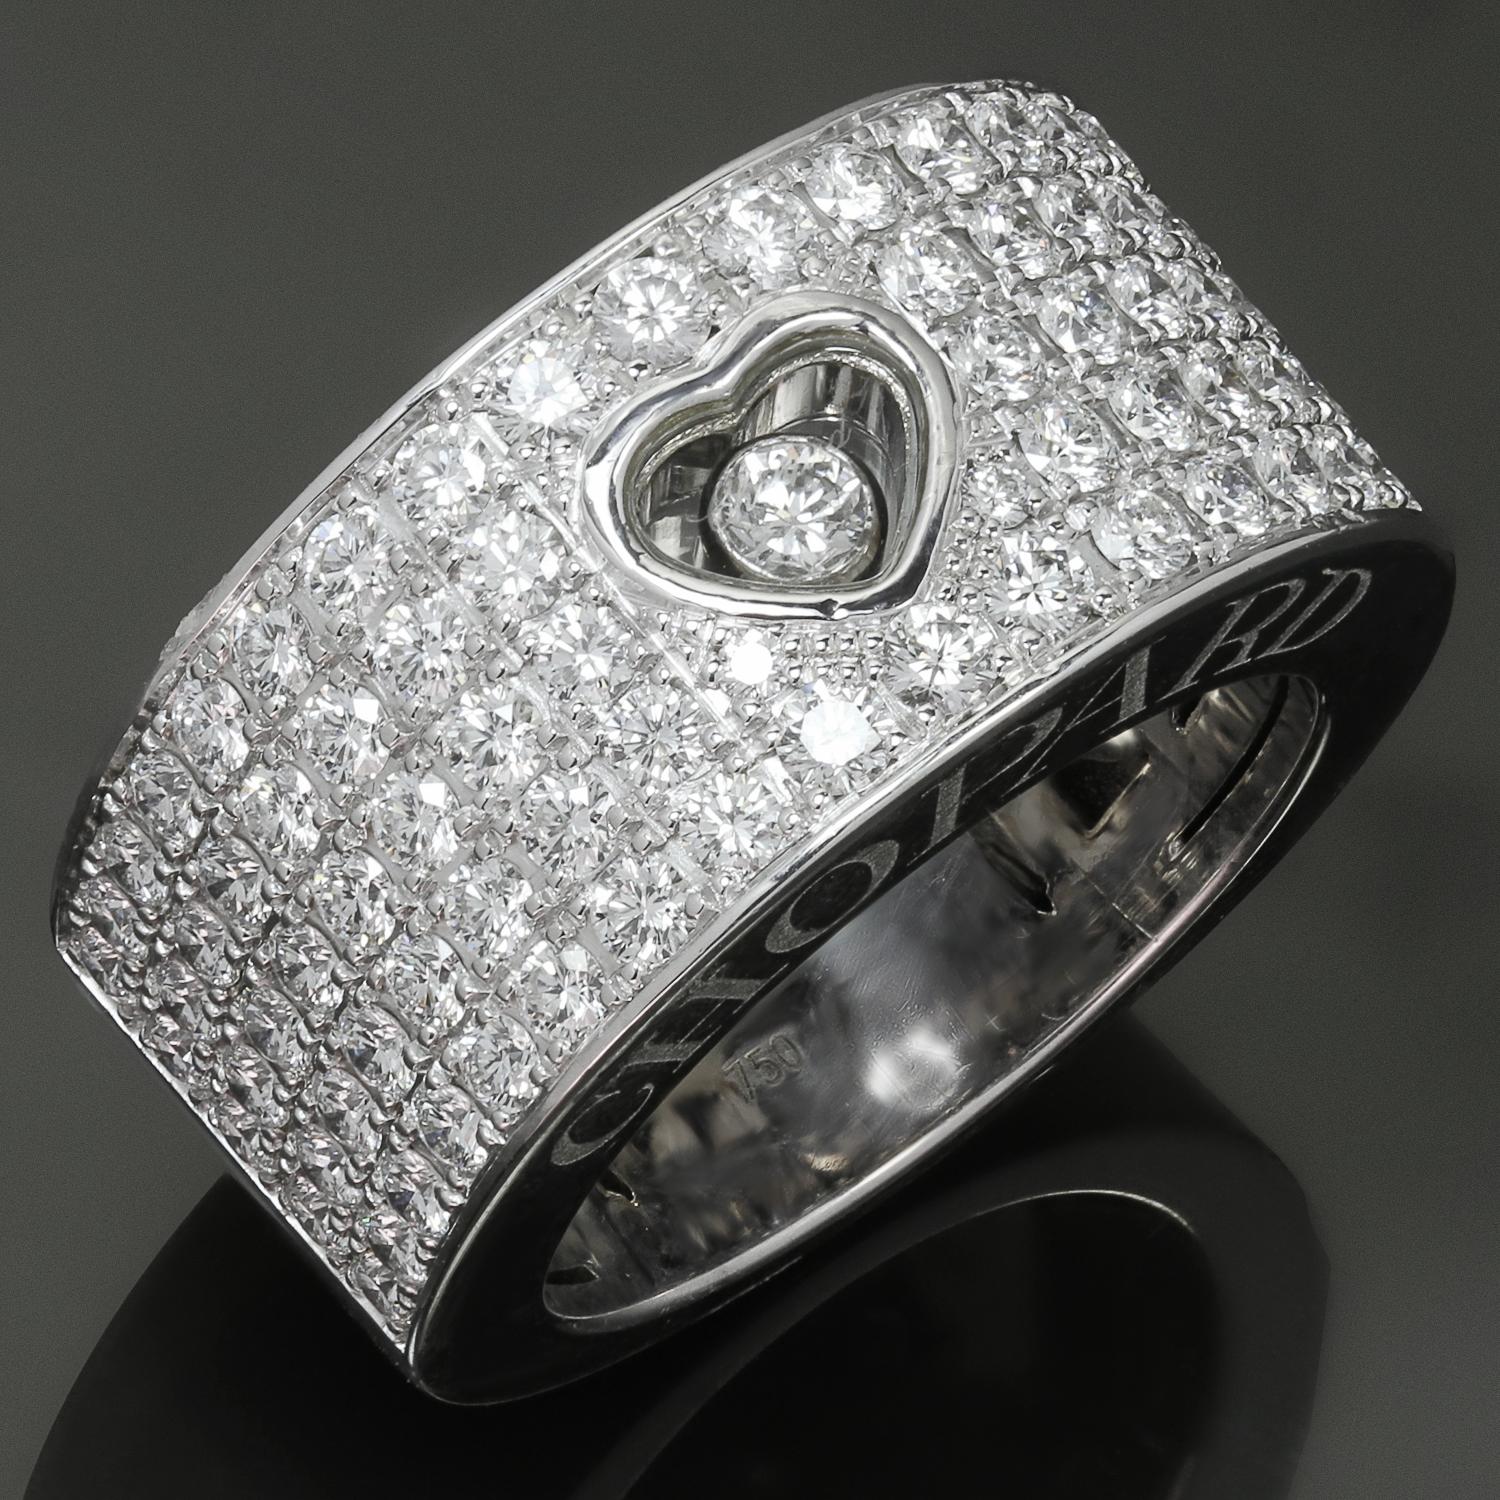 Cette fabuleuse bague Chopard de la collection emblématique Happy Diamond est réalisée en or blanc 18 carats et sertie de 87 diamants ronds de taille brillant E-F-G VVS1-VVS2 d'un poids estimé entre 1,80 et 2,0 carats. Elle est rehaussée d'un